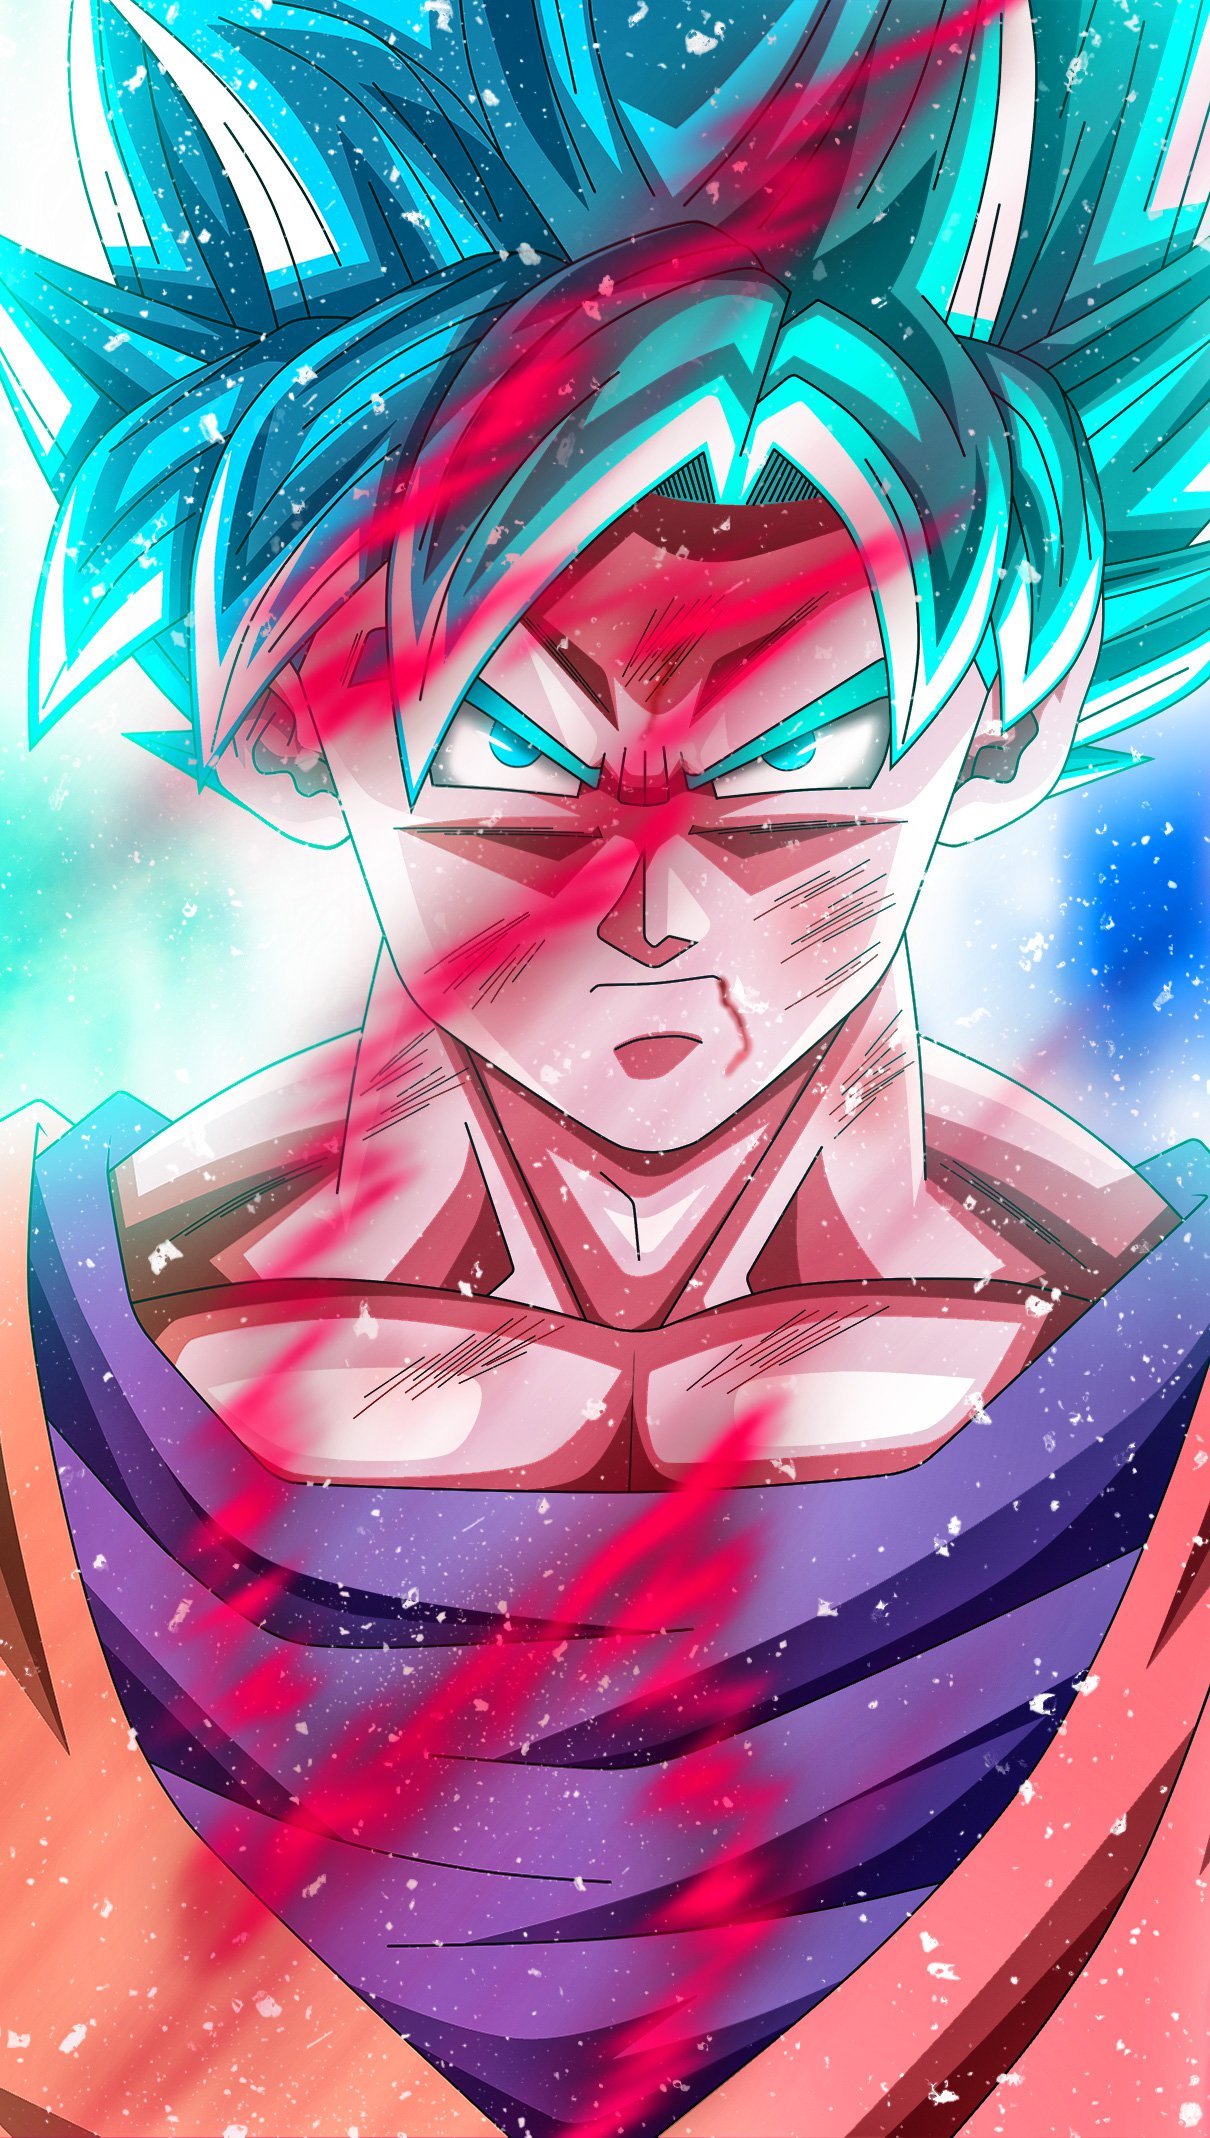 Goku Super Saiyan Blue de Dragon Ball Super Anime Fondo de pantalla ID:4547